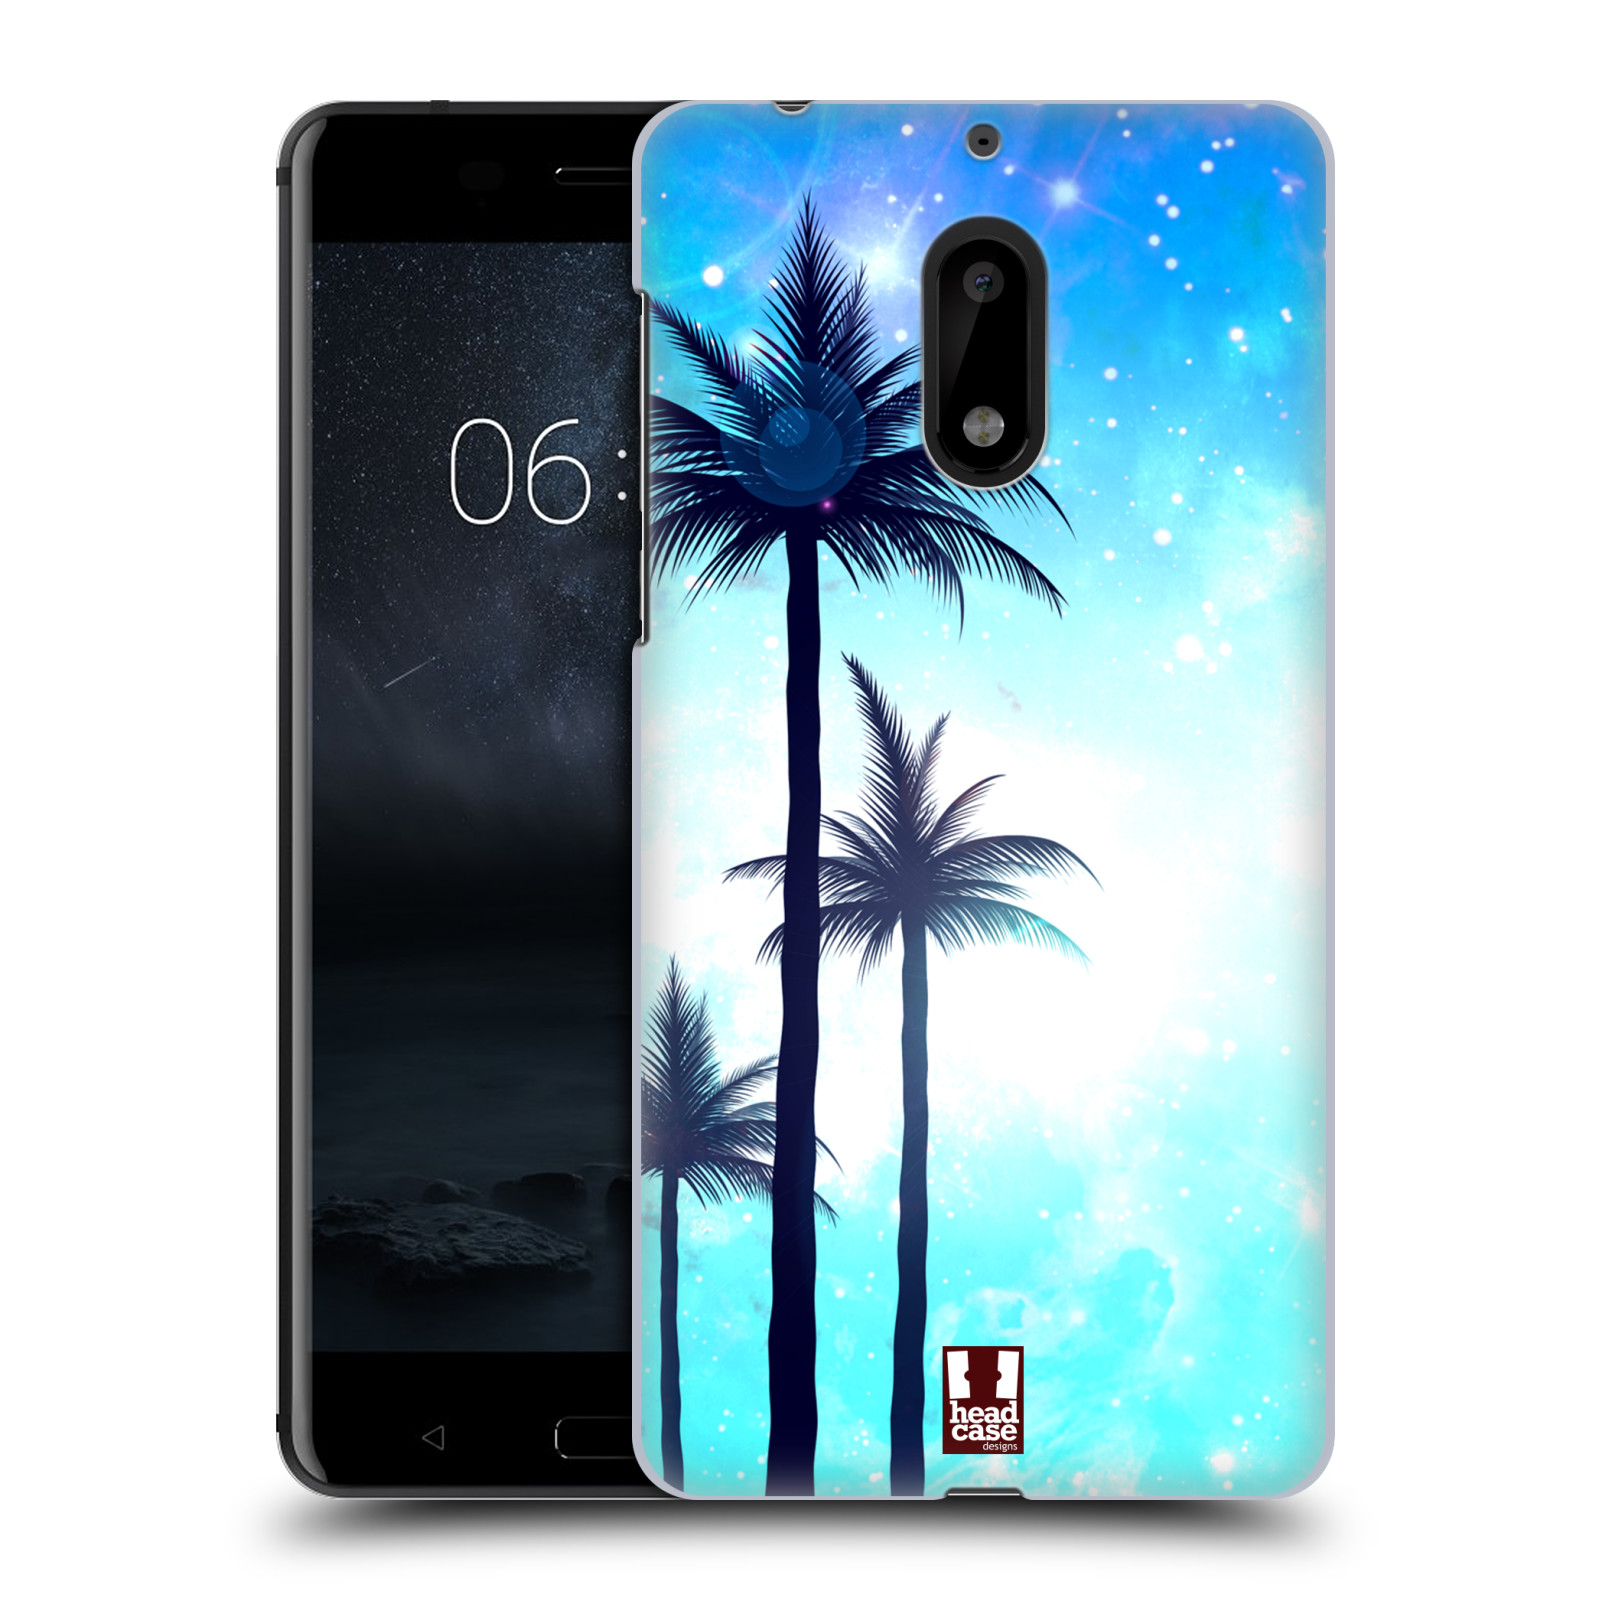 HEAD CASE plastový obal na mobil Nokia 6 vzor Kreslený motiv silueta moře a palmy MODRÁ